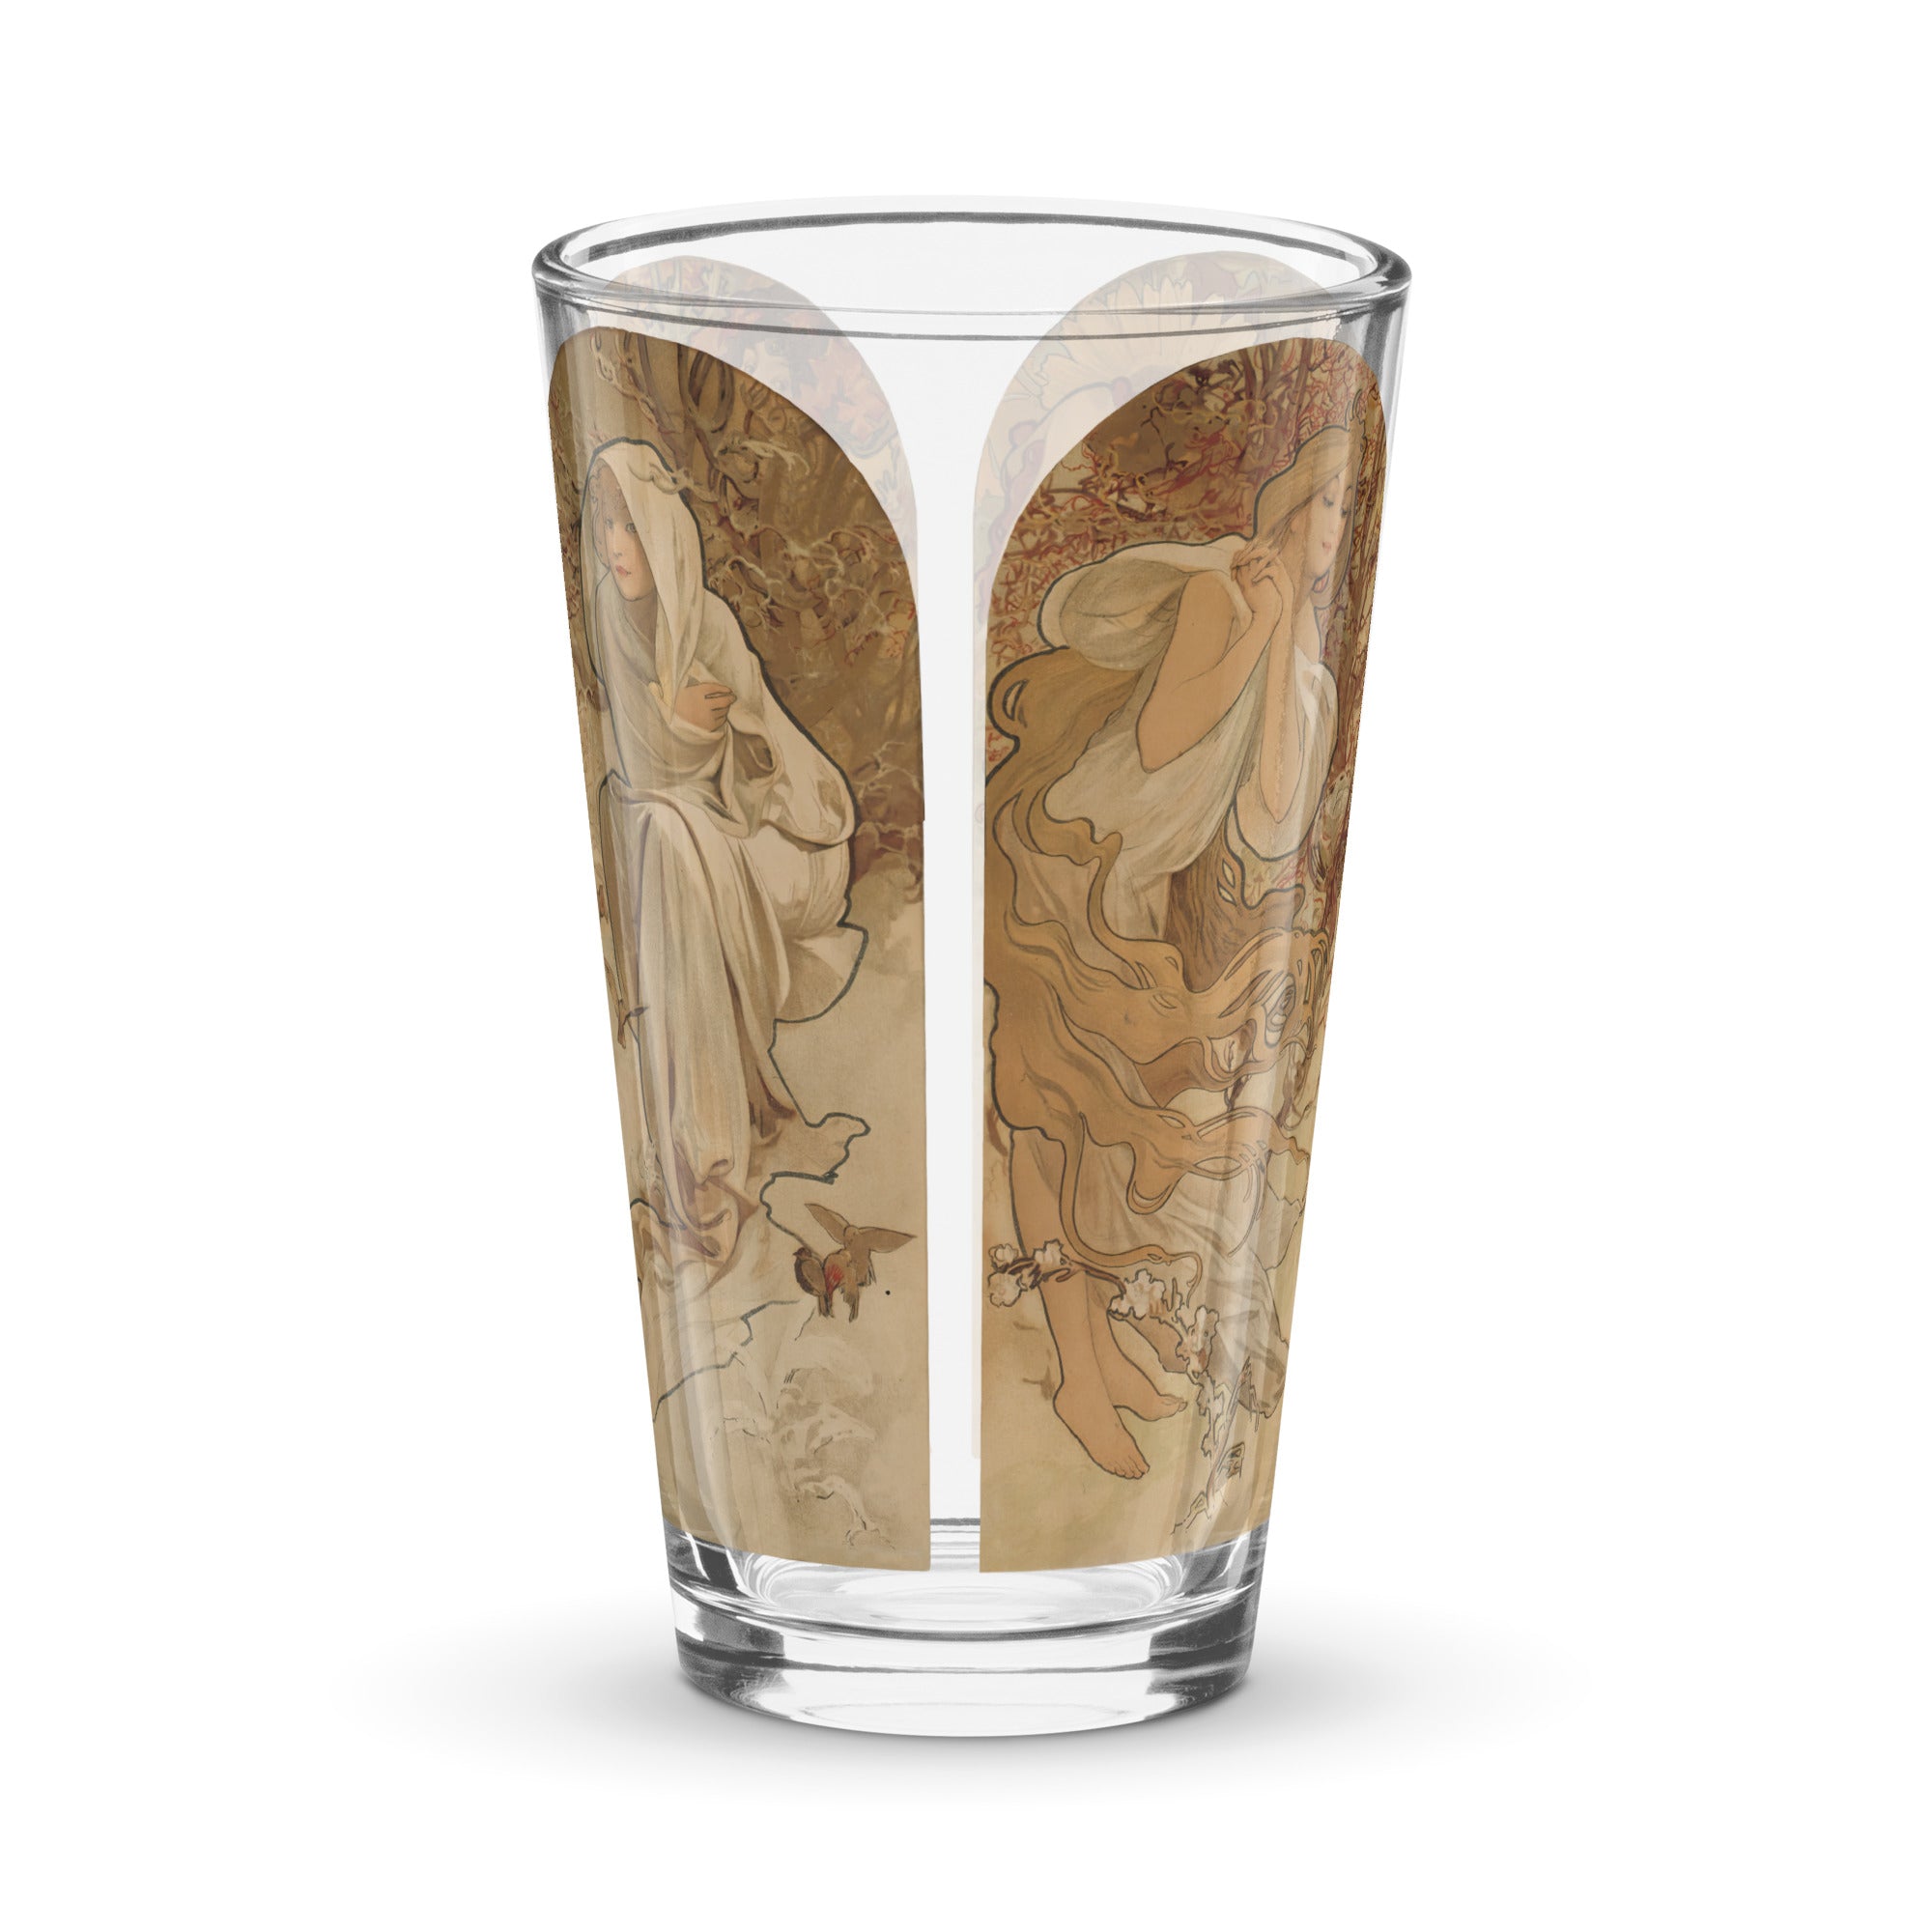 Alphonse Mucha "The Seasons" Pint Glass